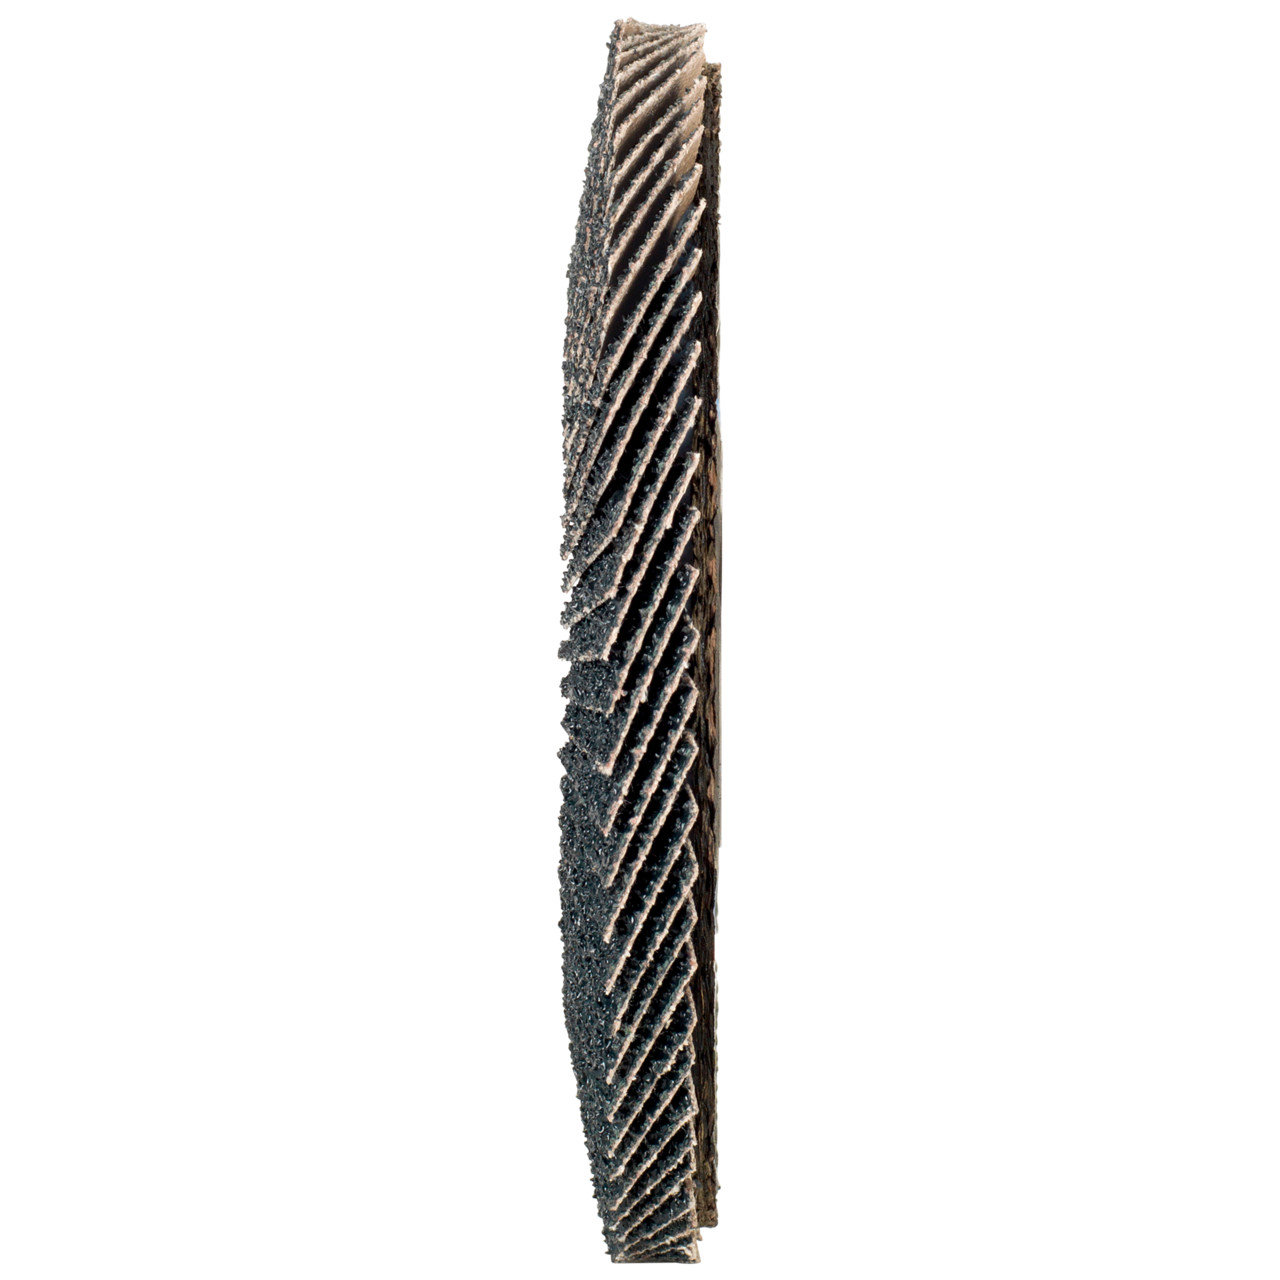 Rondella dentata Tyrolit DxH 178x22.2 2in1 per acciaio e acciaio inox, P40, forma: 27A - versione offset (versione con corpo portante in fibra di vetro), Art. 668670